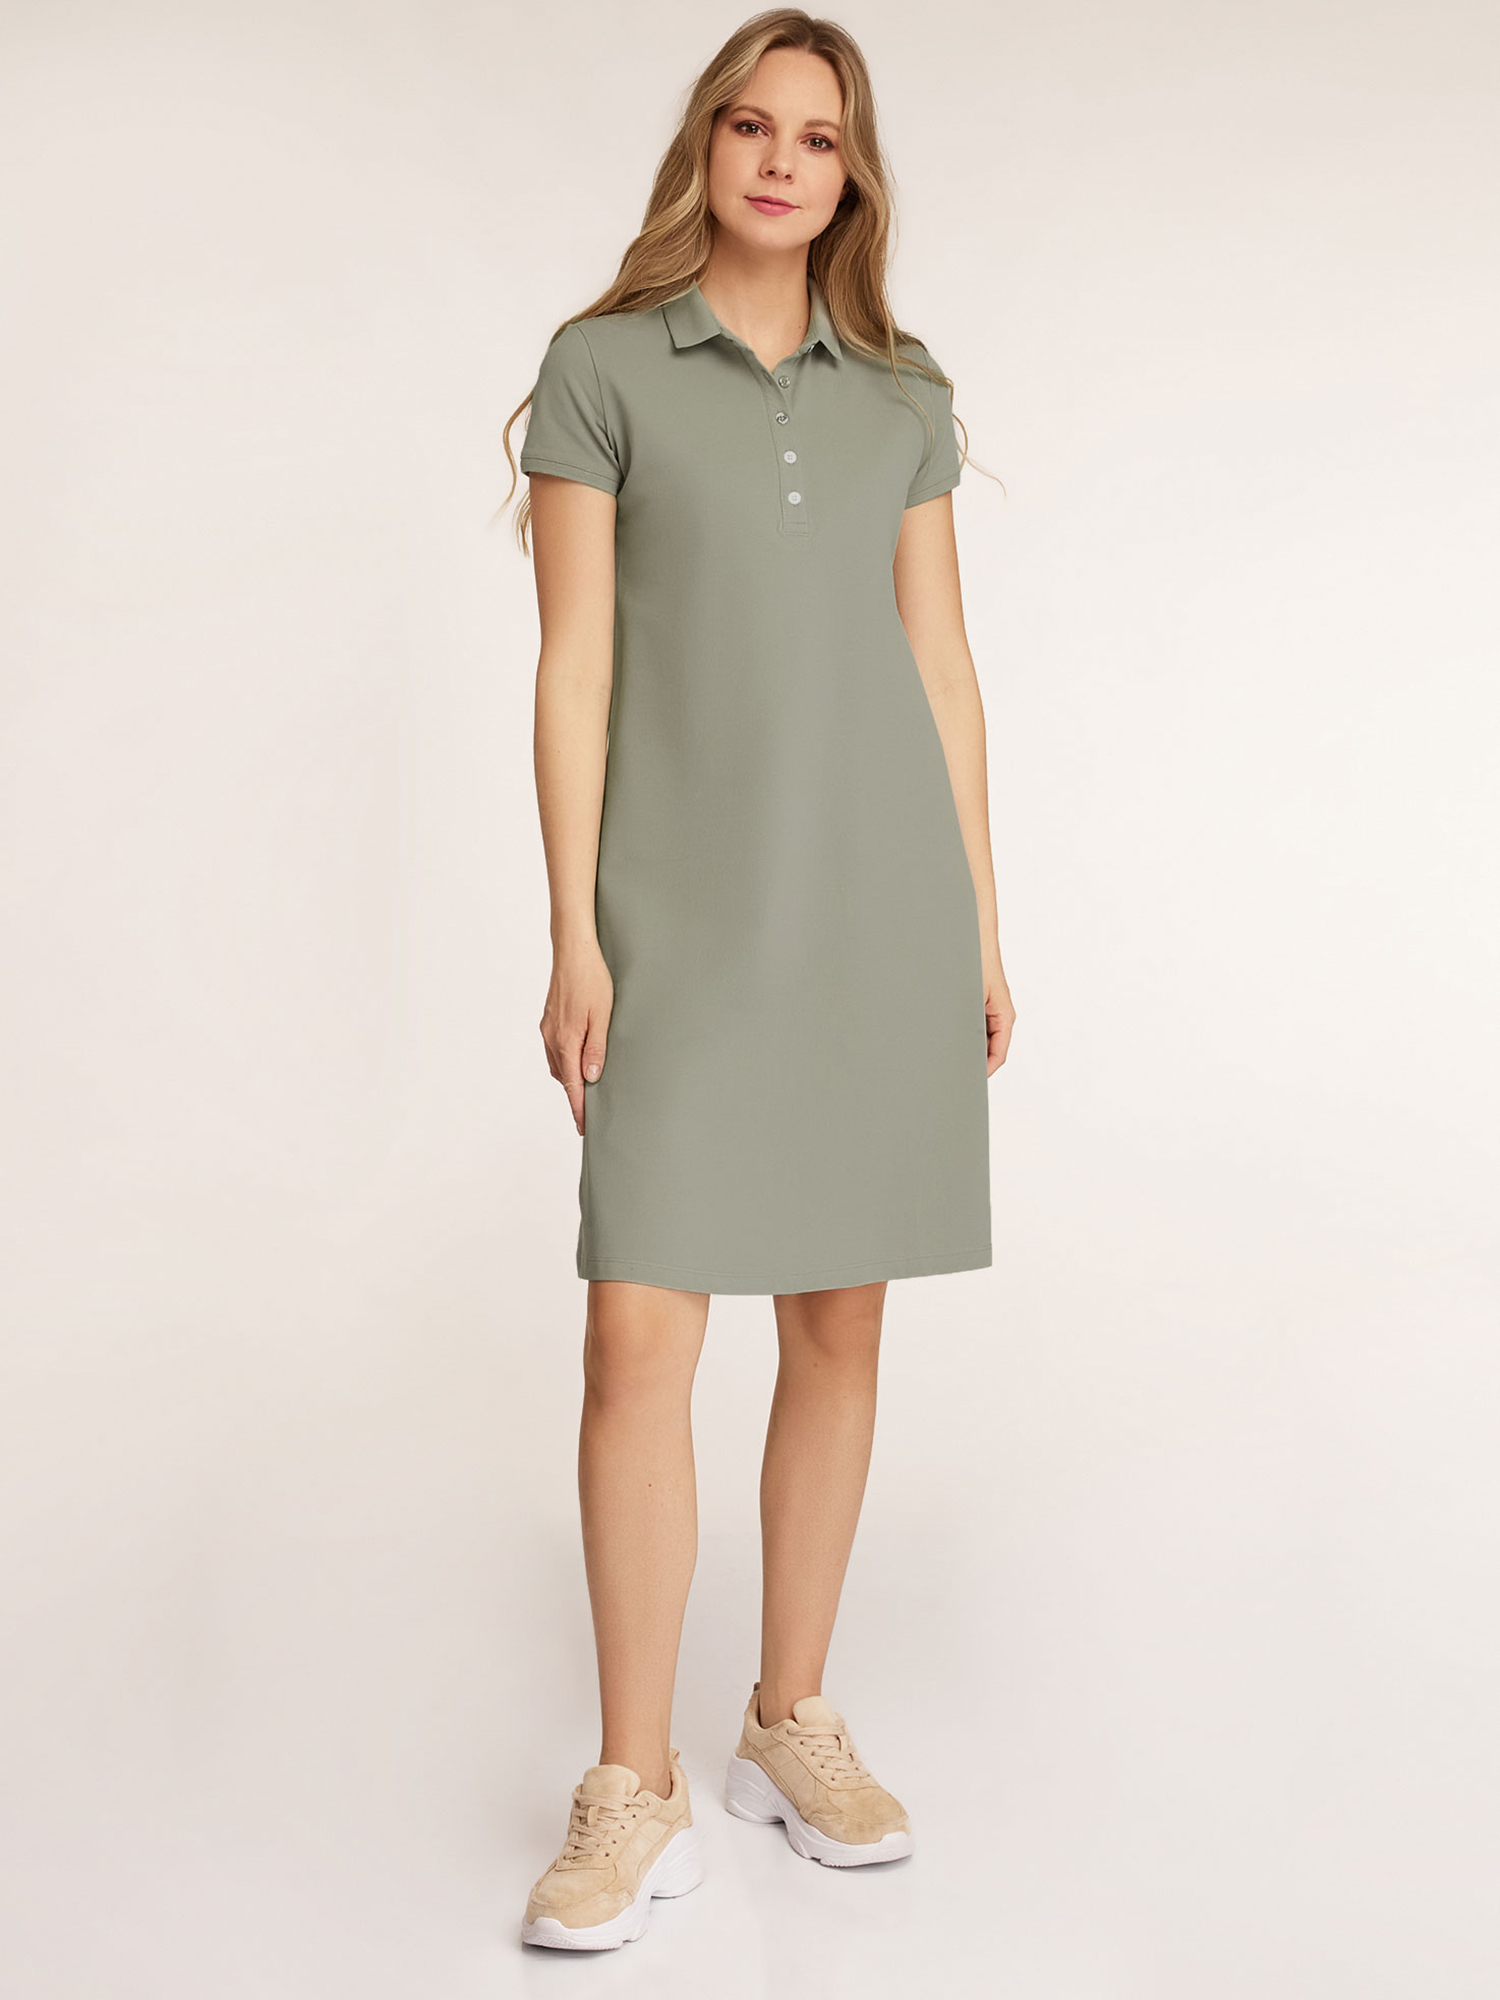 Платье женское oodji 24001118-4B зеленое XS